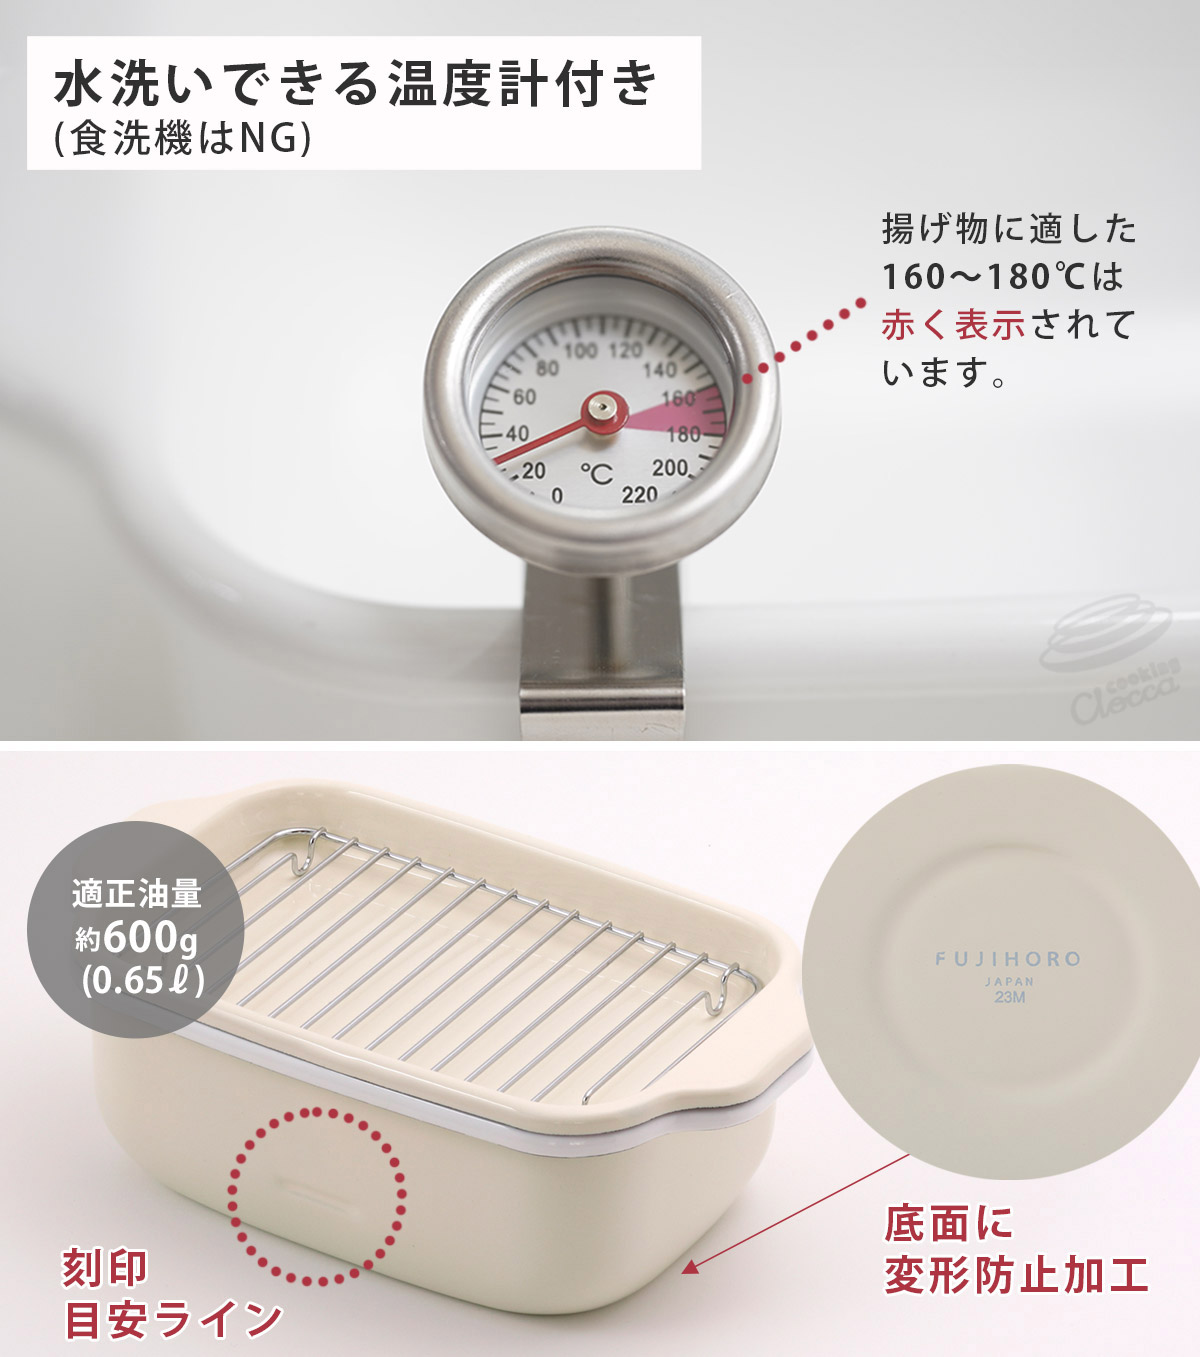 着脱可能なクリップタイプ,丸洗い可能な防水型の温度計